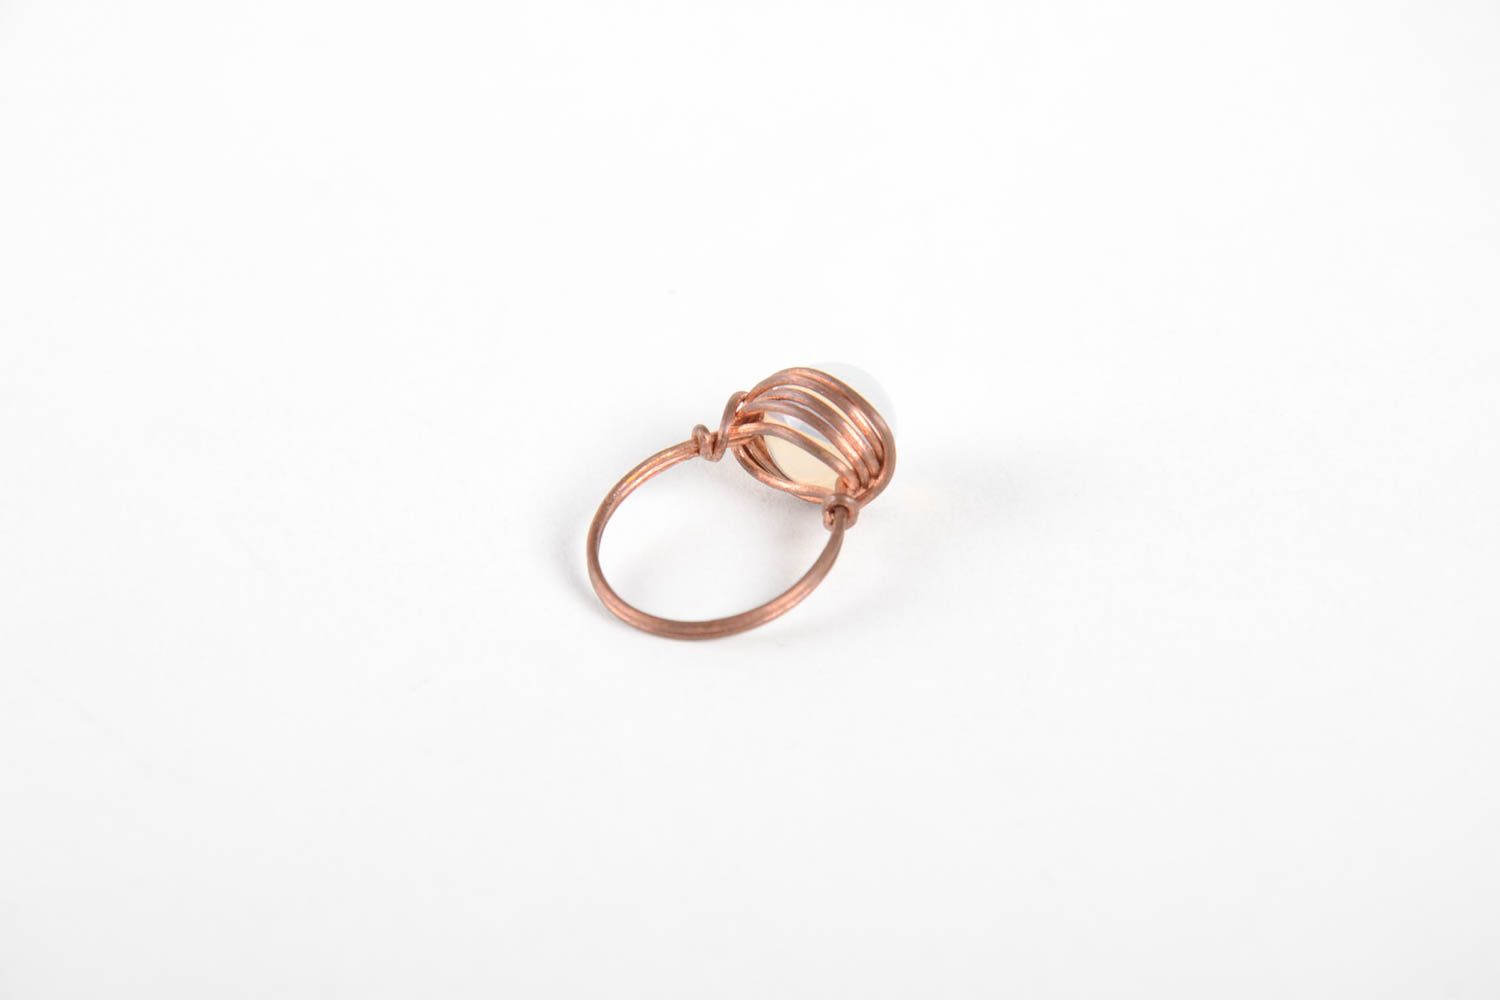 Frauen Ring handgeschaffen Kupfer Ring effektvoll Designer Schmuck ungewöhnlich foto 4